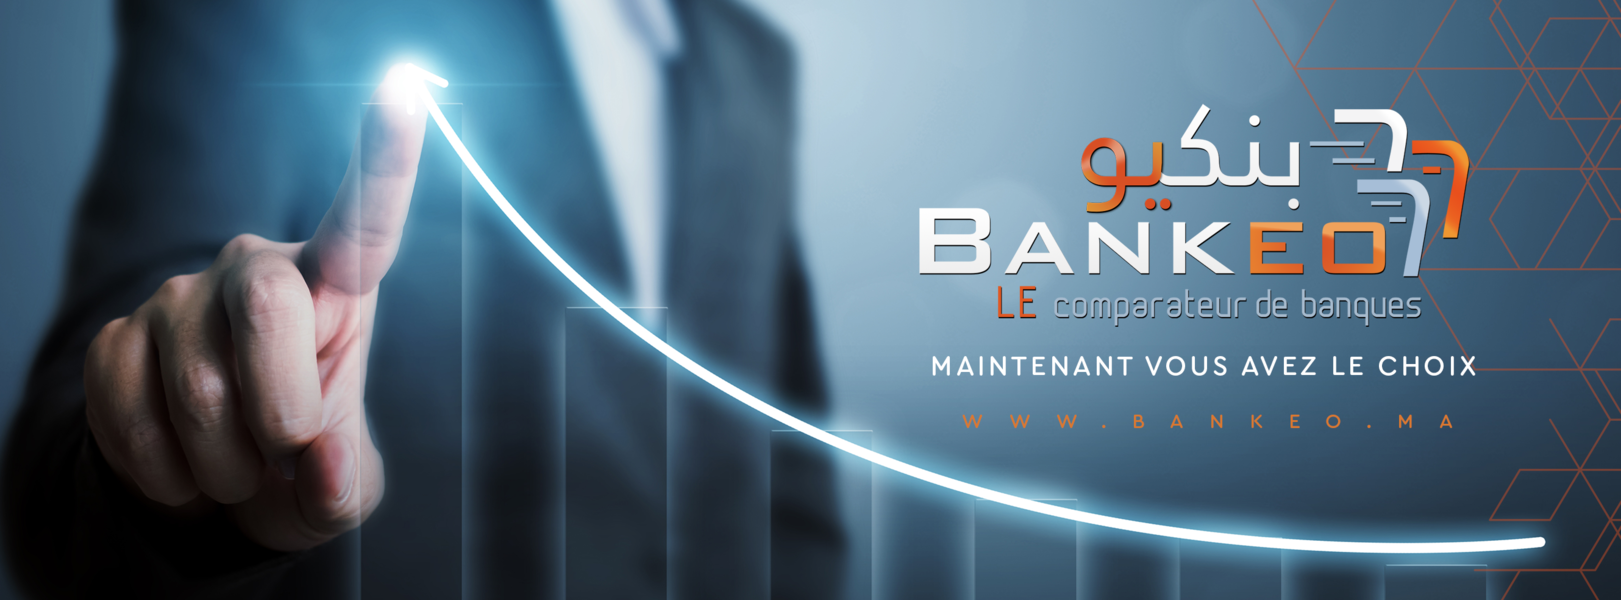 Bankeo.ma, un comparateur de banques marocaines sur internet voit le jour